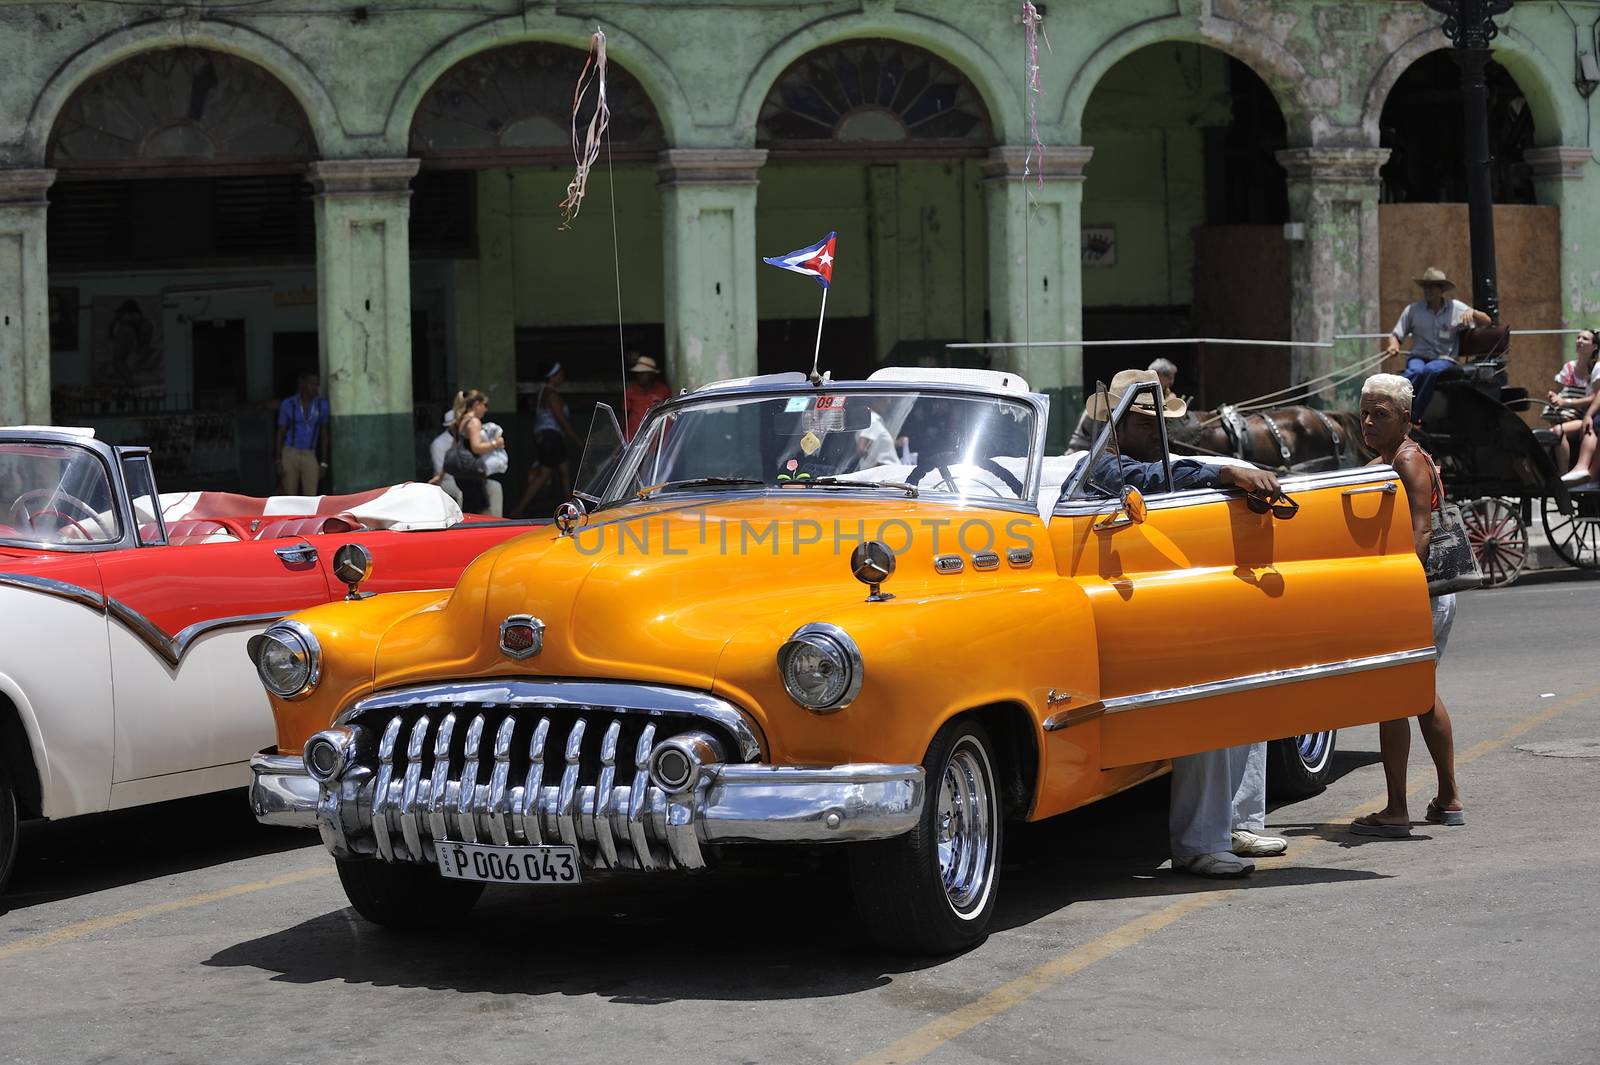 Cars of Cuba by kertis